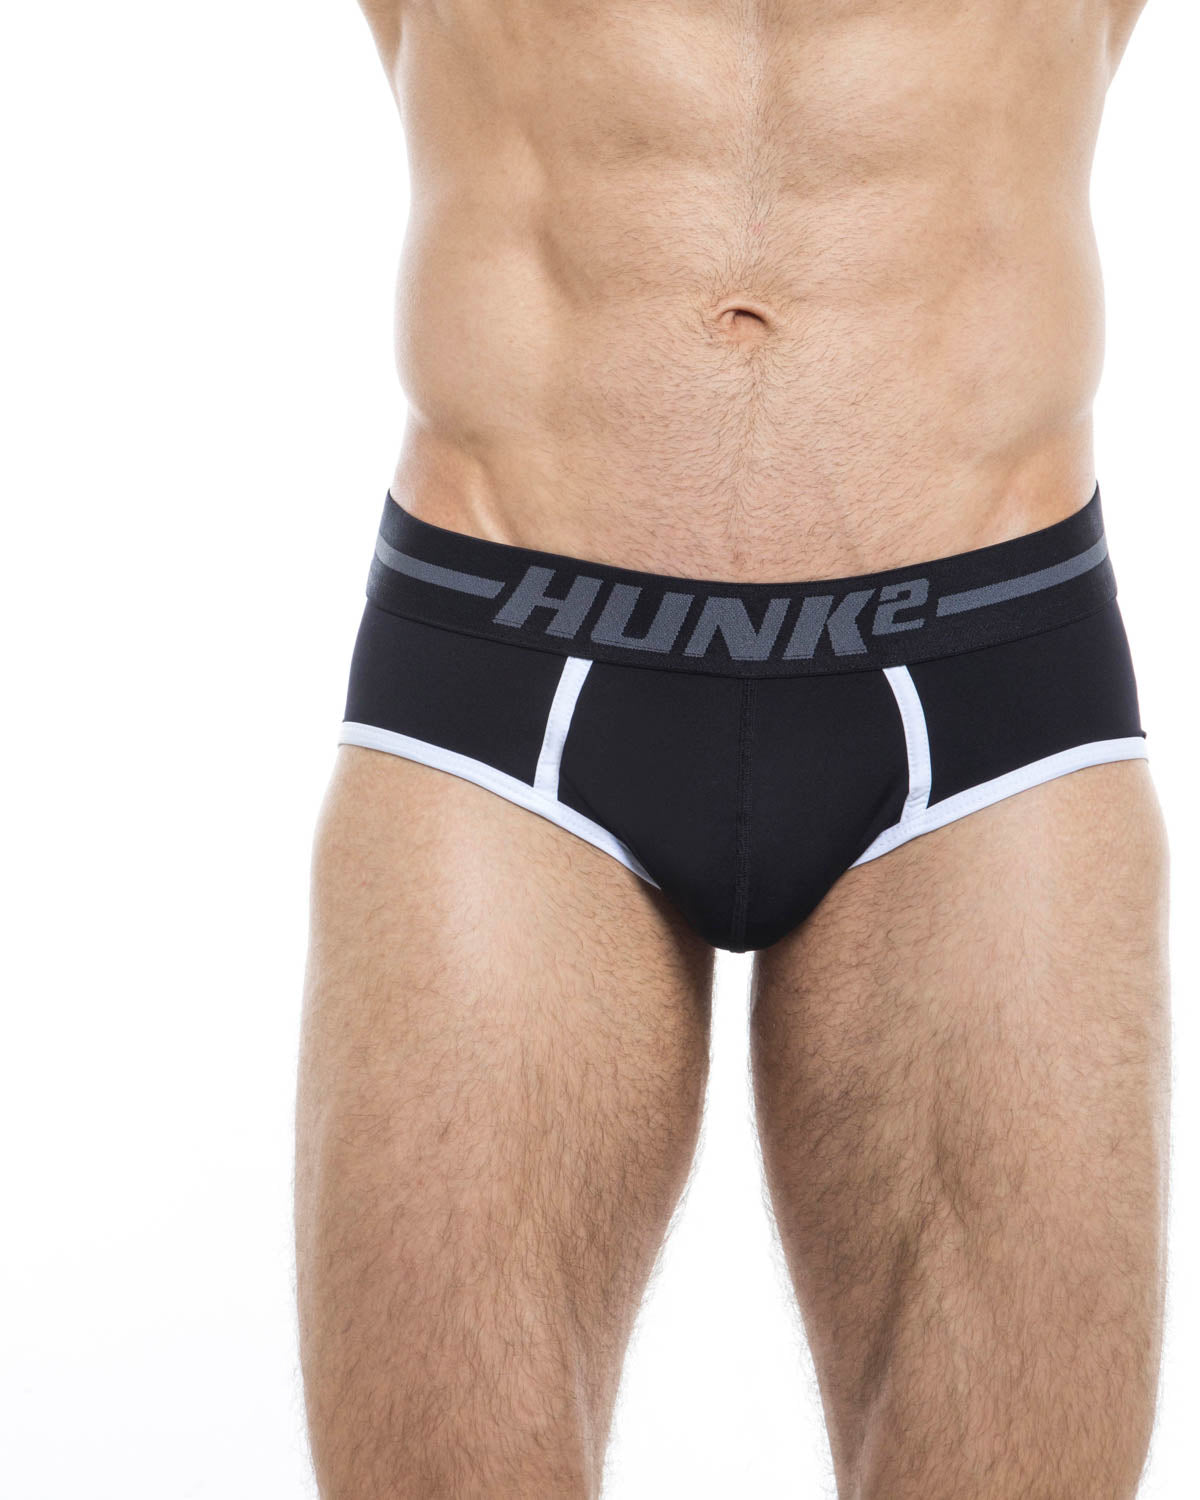 Men's brief underwear - HUNK2 Underwear Adonis Schatten Briefs available at MensUnderwear.io - Image 1